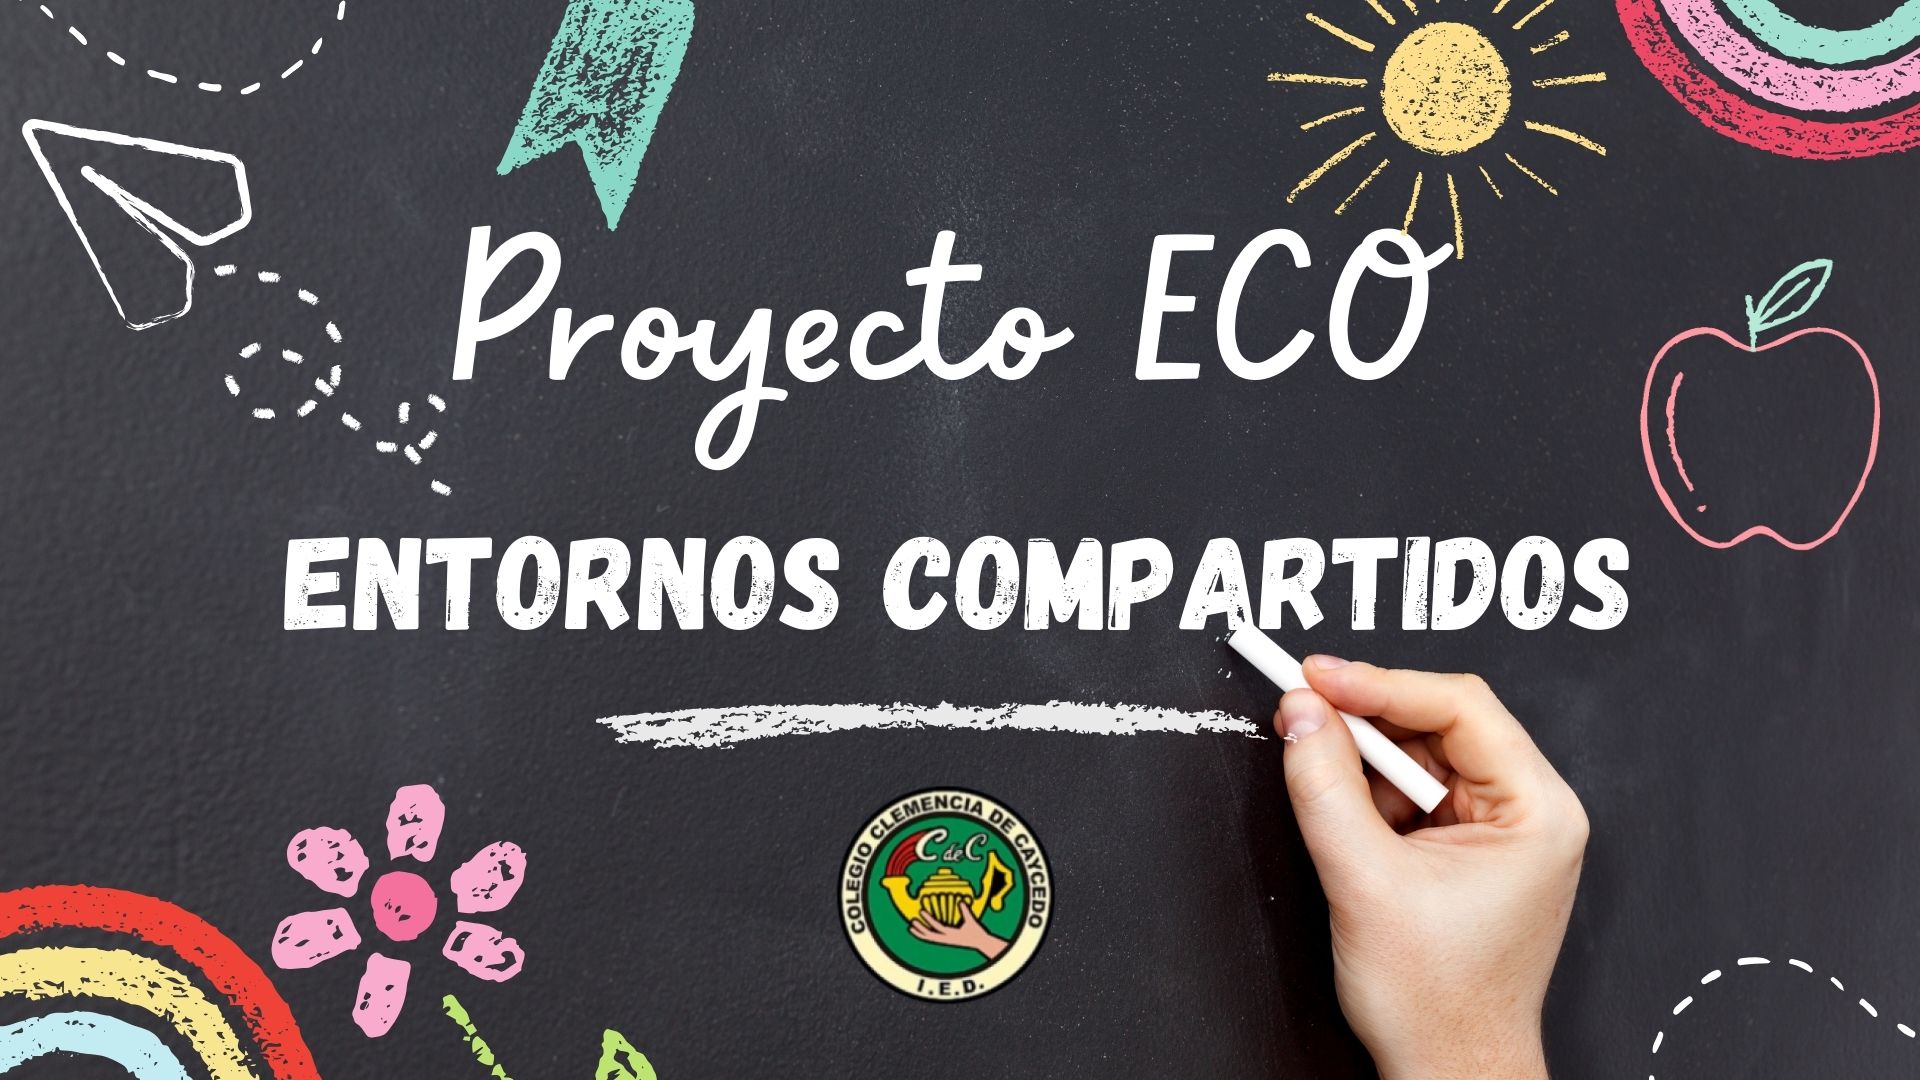 Proyecto eco